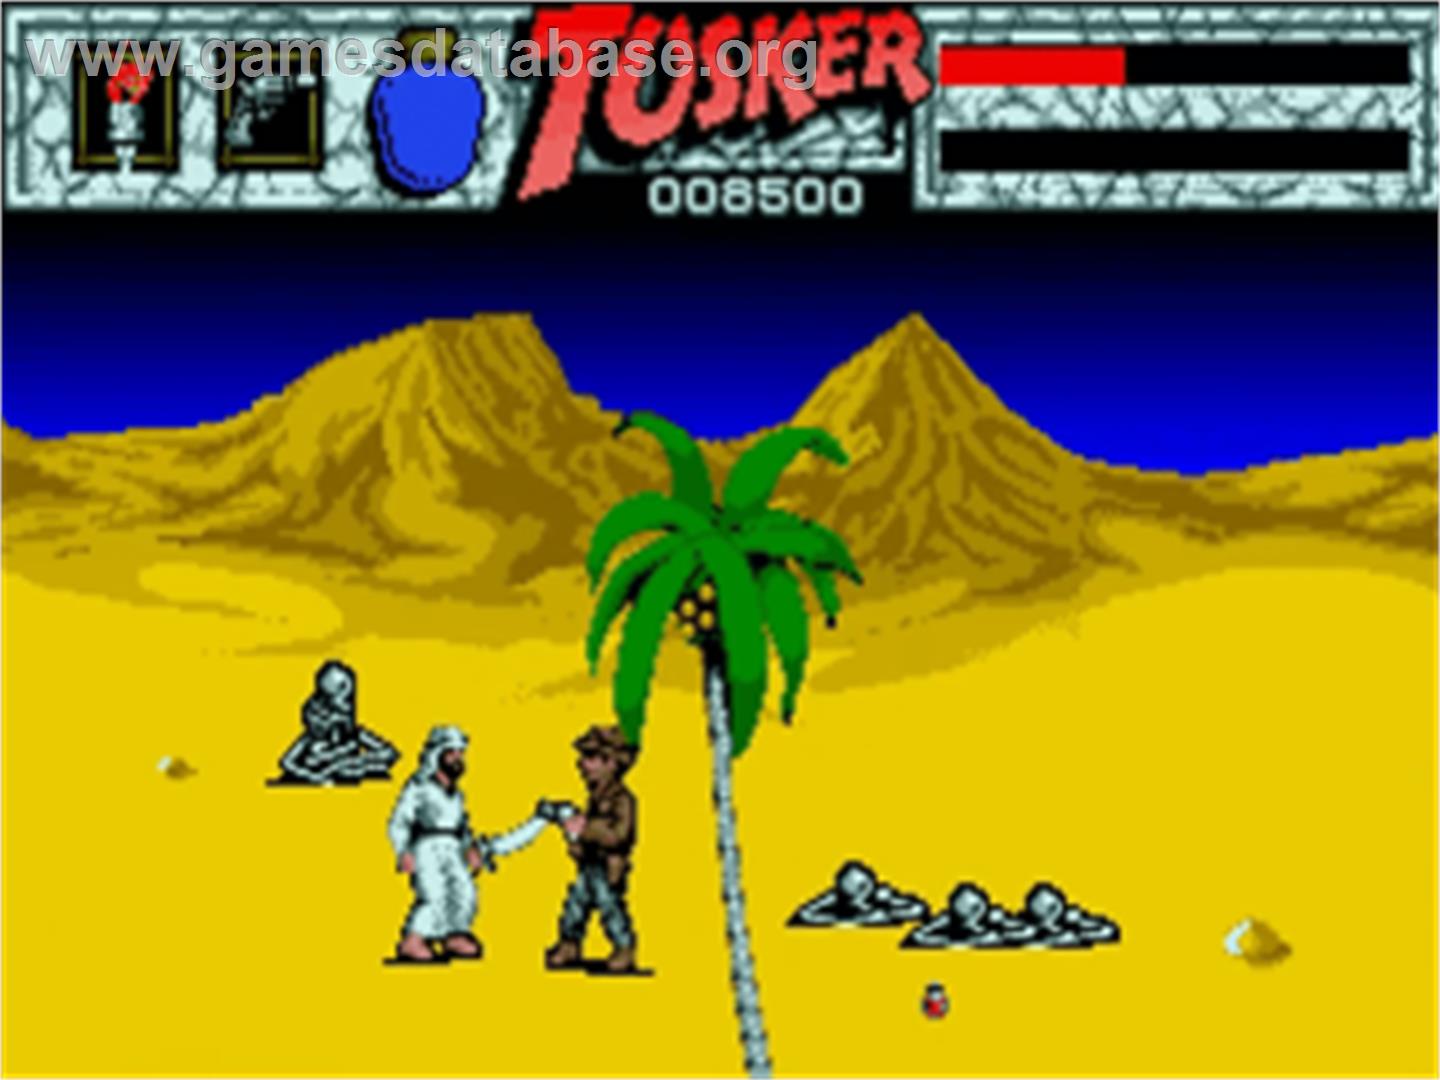 Tusker - Commodore Amiga - Artwork - In Game